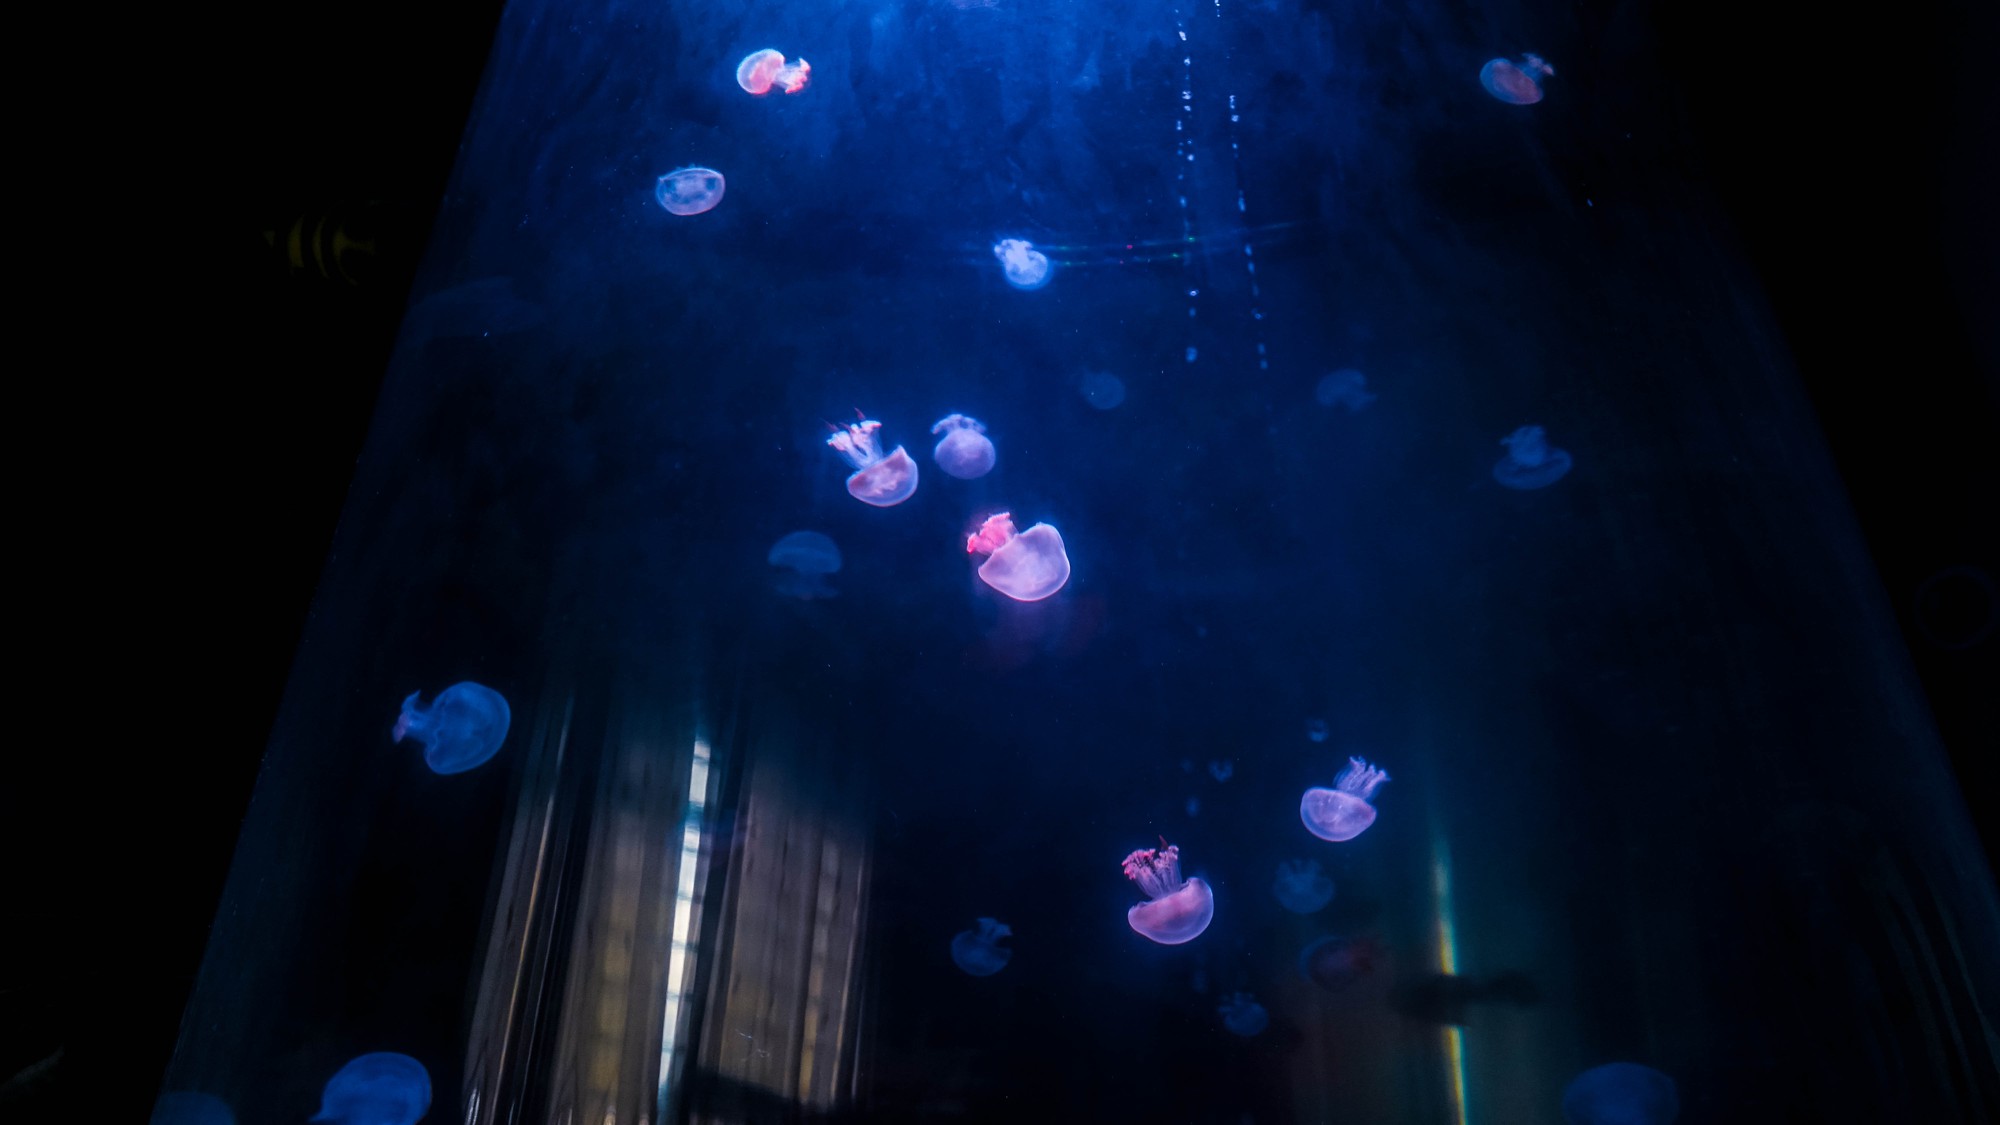 Mô hình nuôi sứa cảnh sống ảo tại nhà của cô gái trẻ ở TP HCM - Ảnh 9.